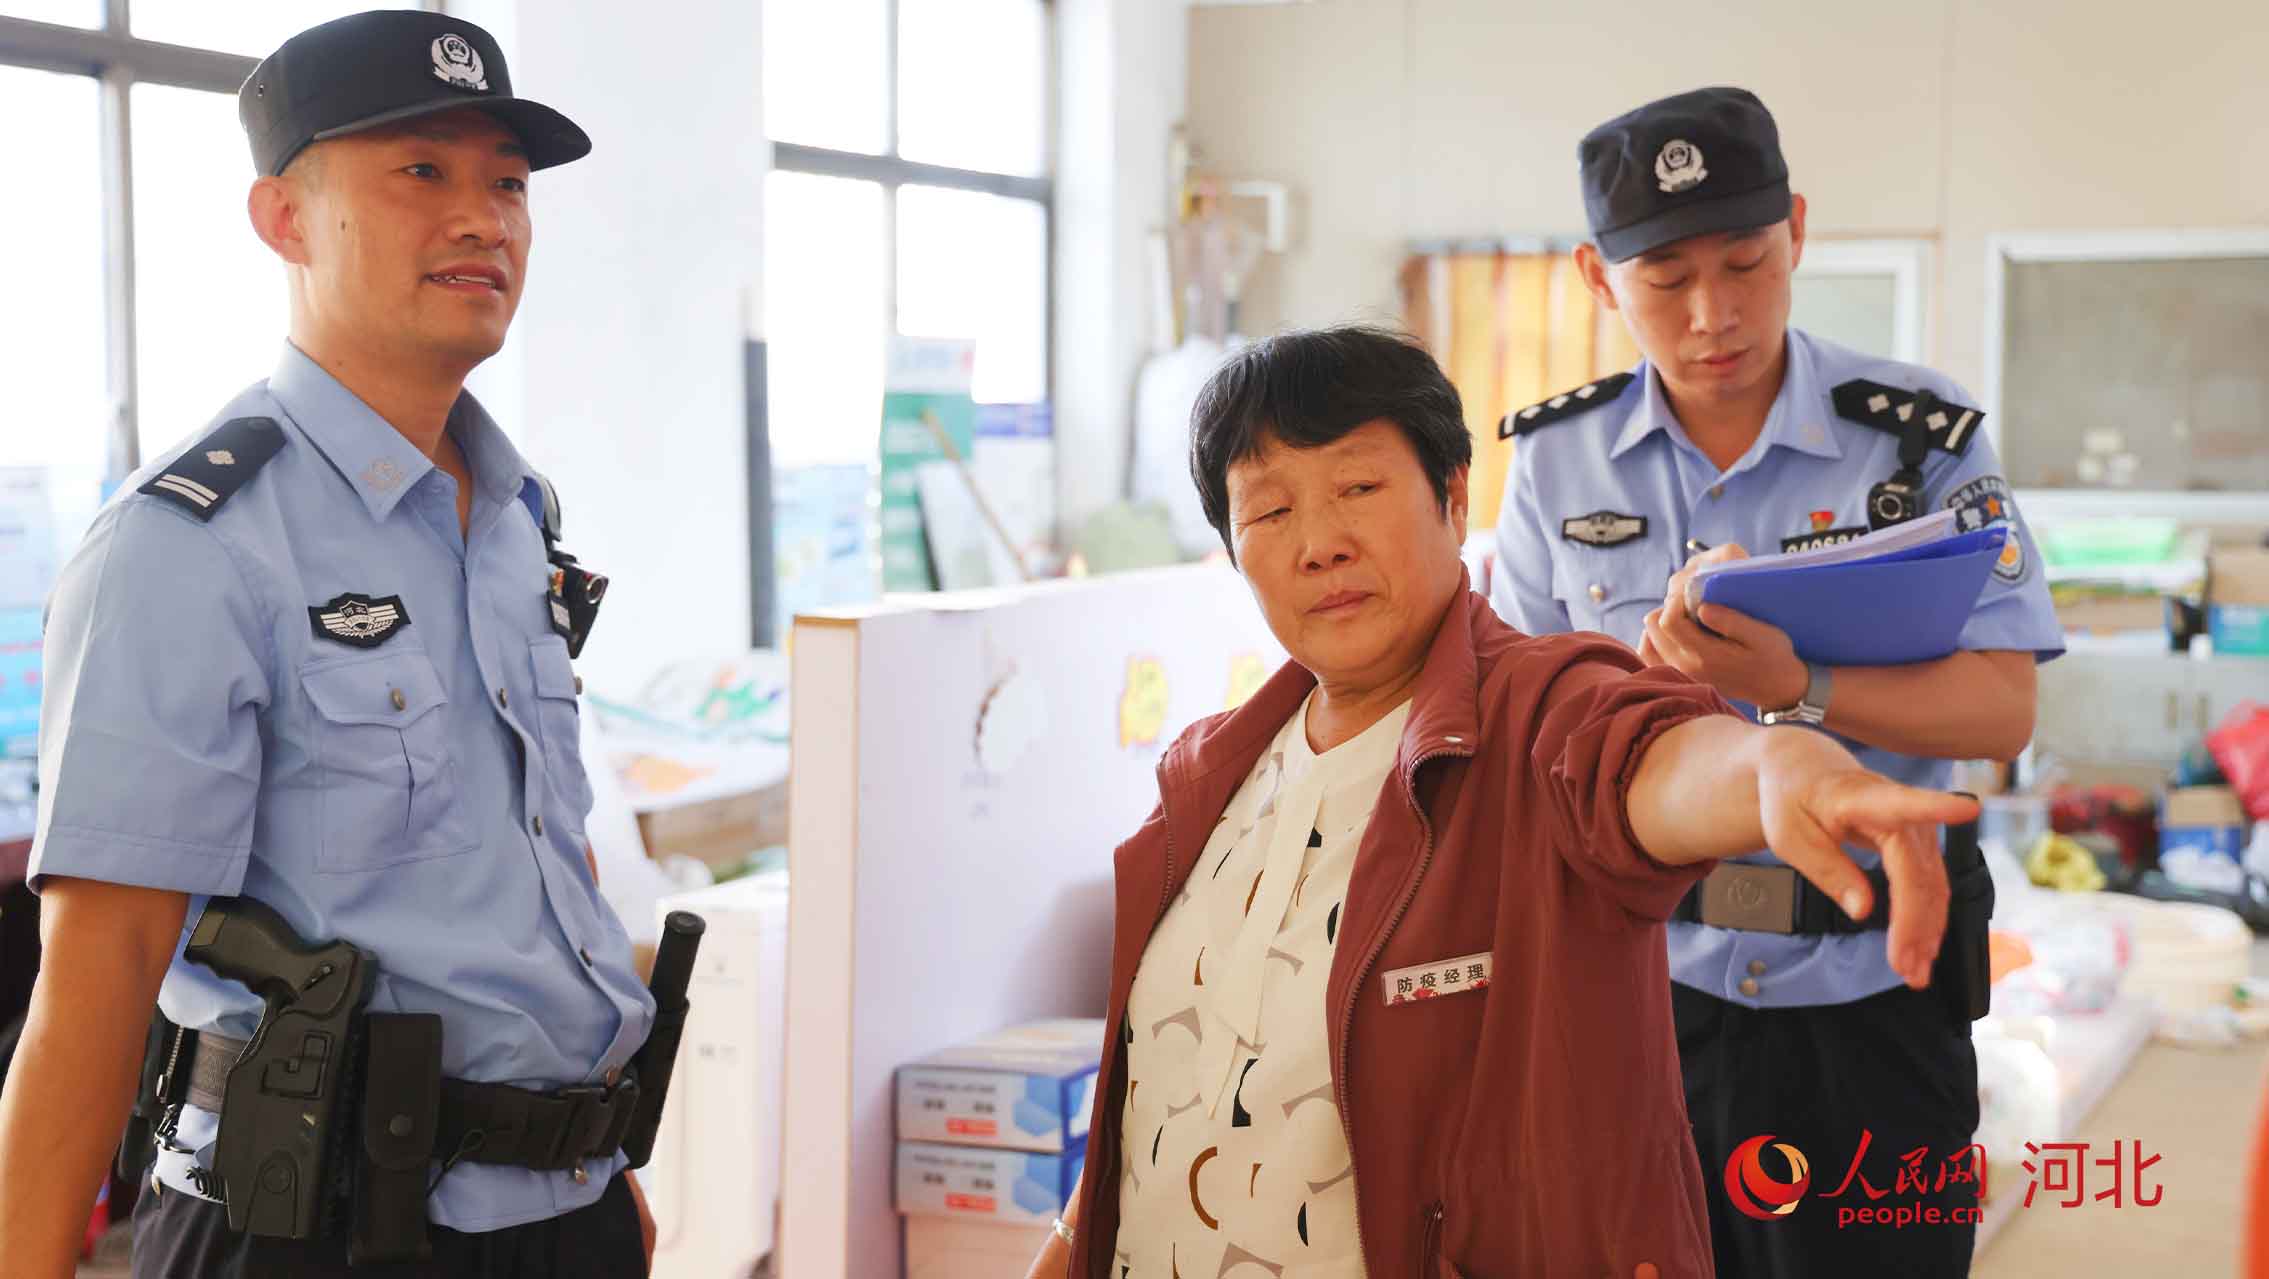 杨家庄派出所民警向报警人了解情况。 人民网 周博摄。